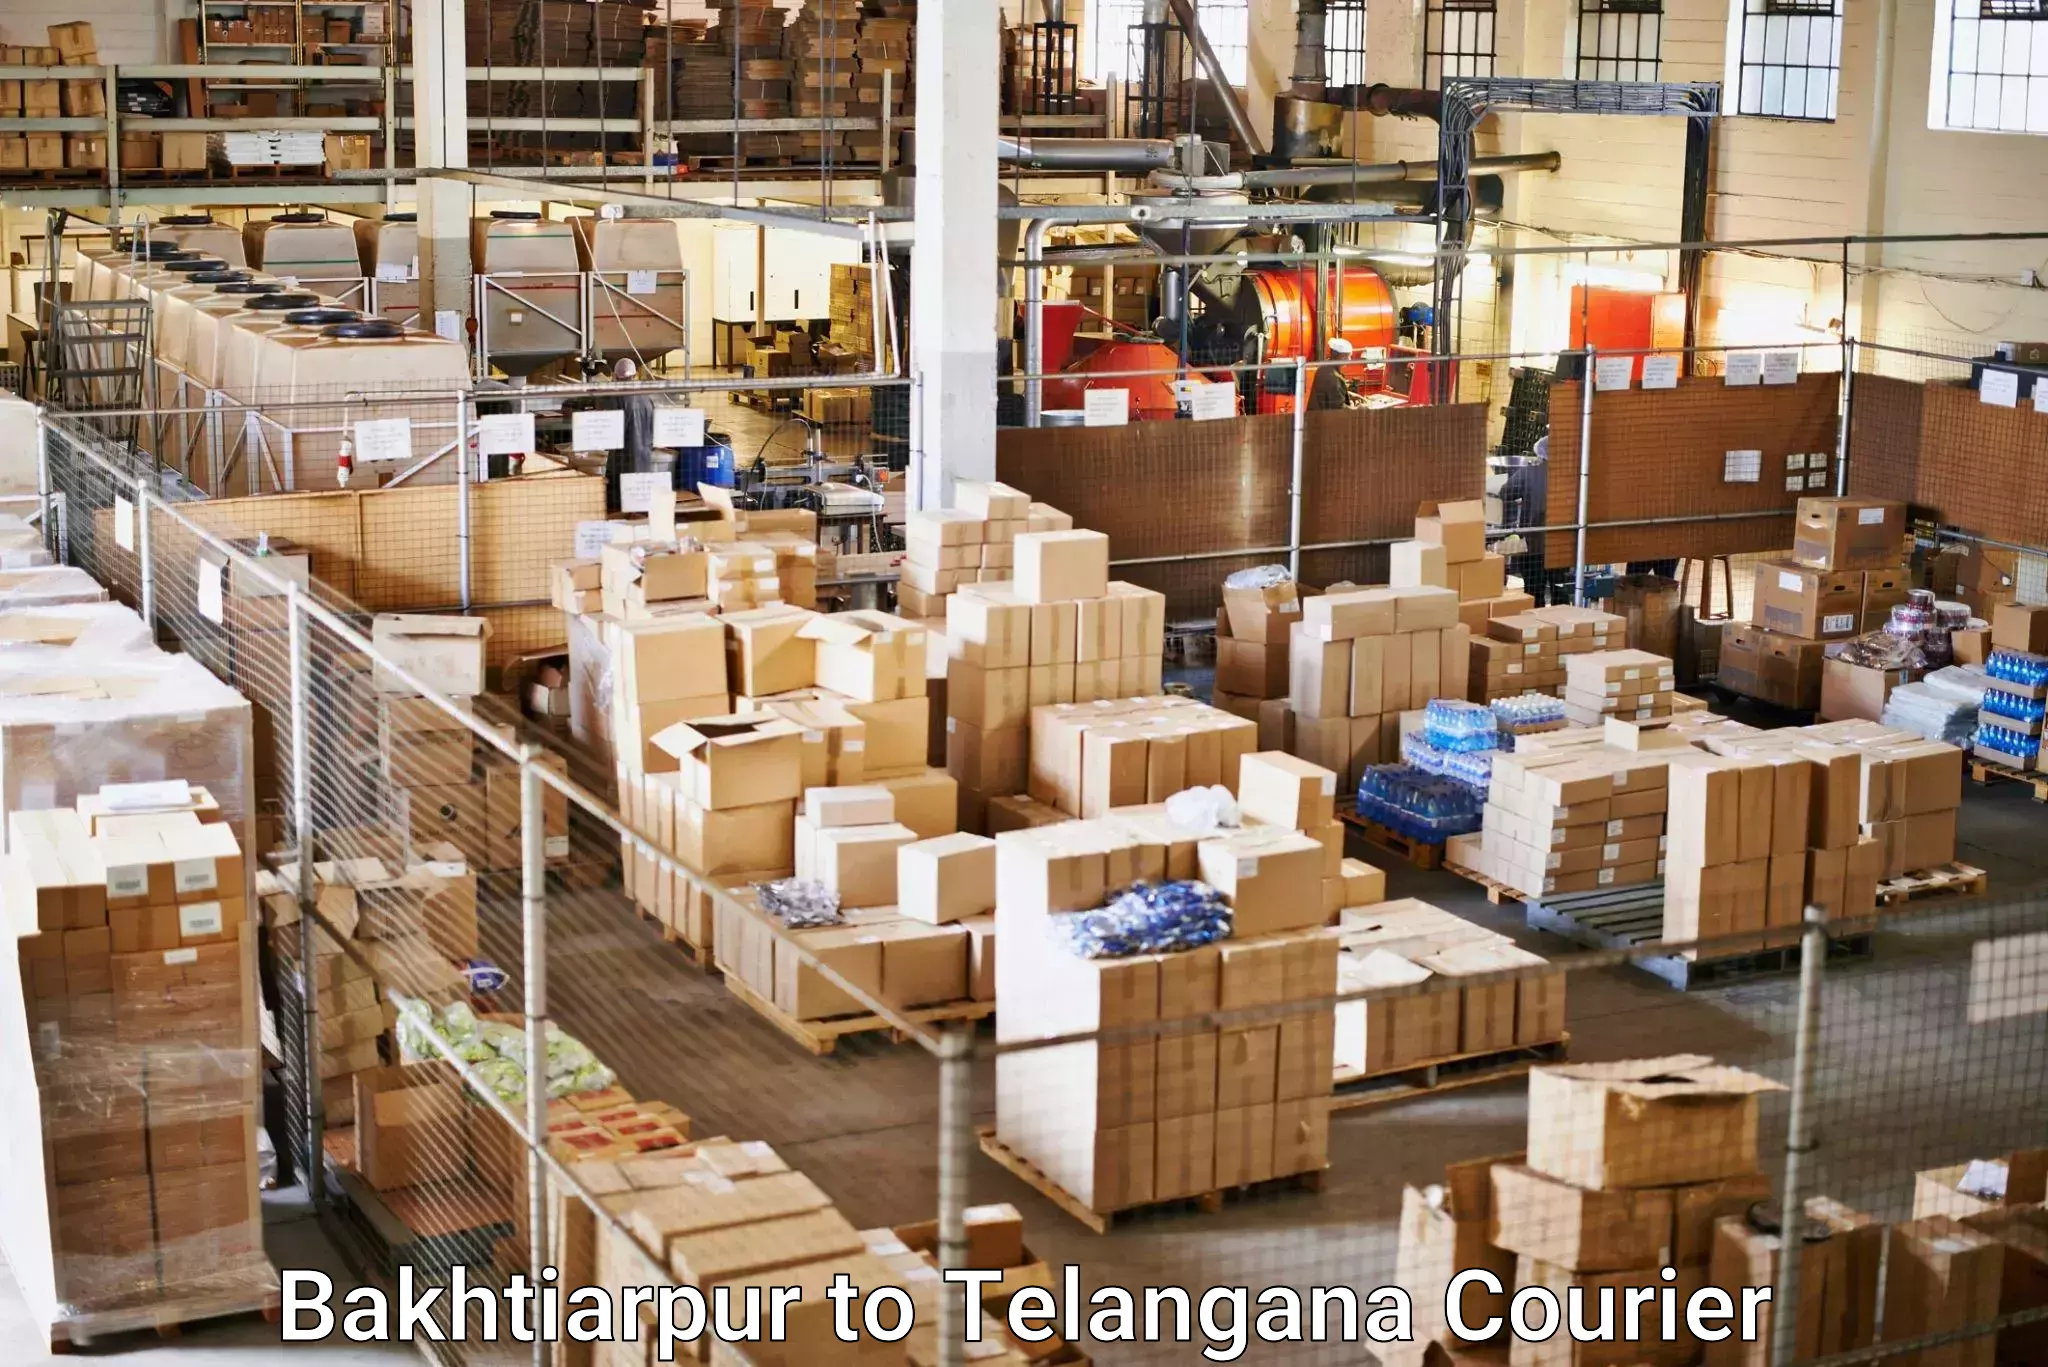 Digital courier platforms Bakhtiarpur to Veenavanka